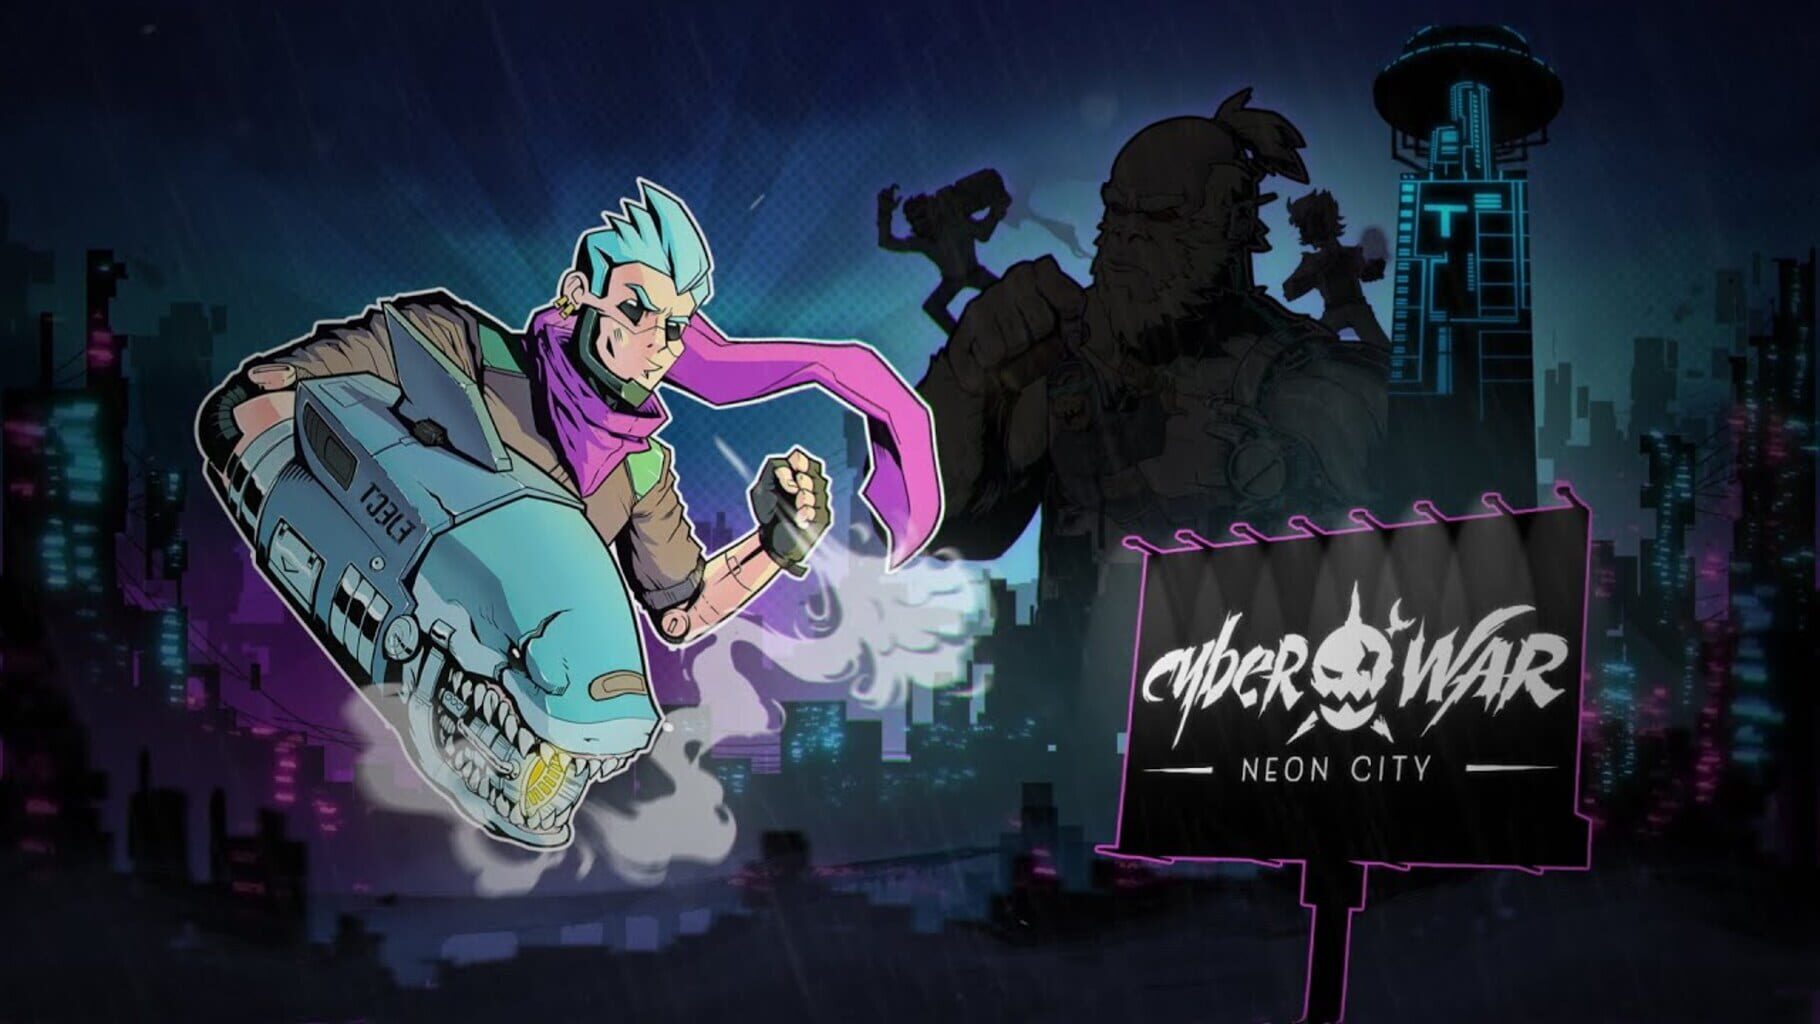 Cyberwar: Neon City artwork